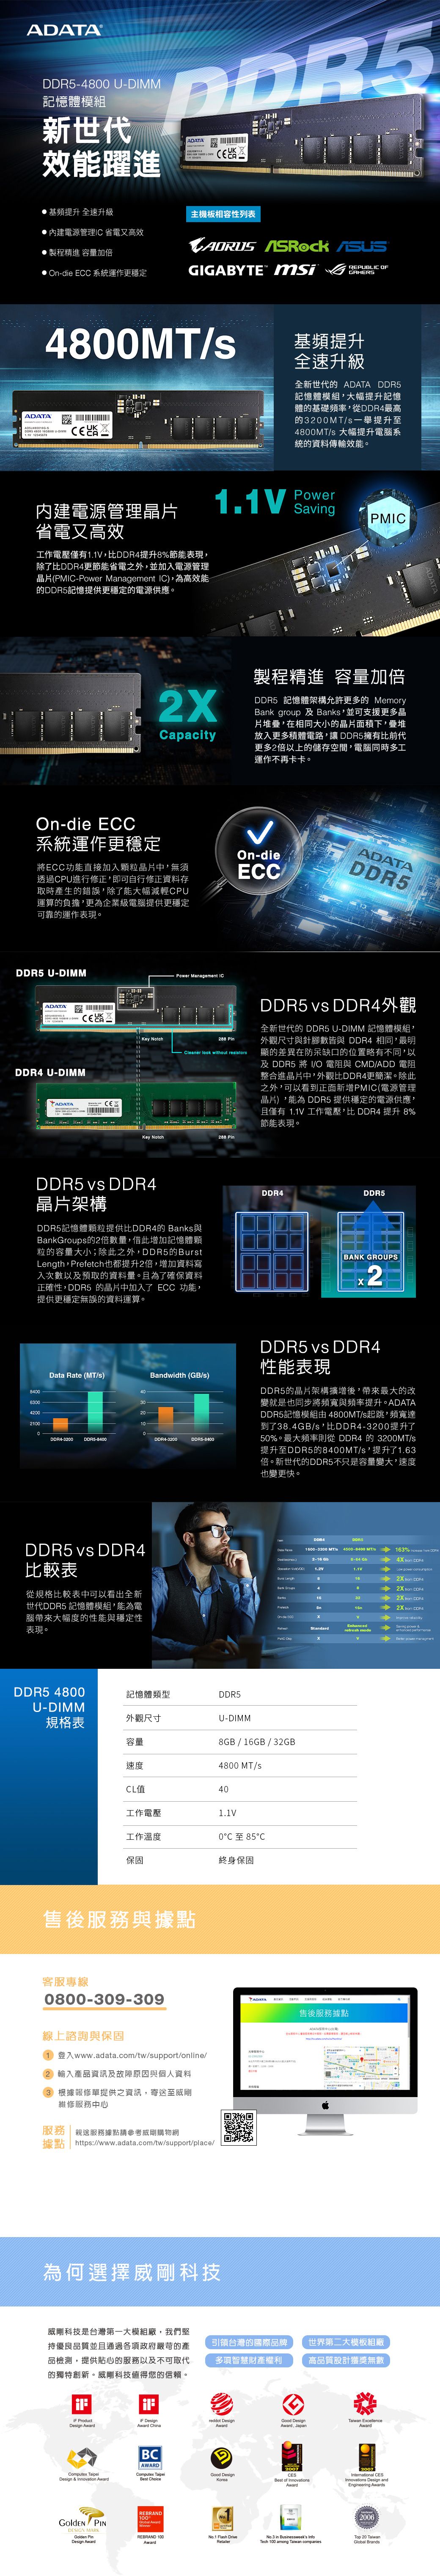 ADATA 威剛DDR5 4800 16GB 桌上型記憶體- PChome 24h購物